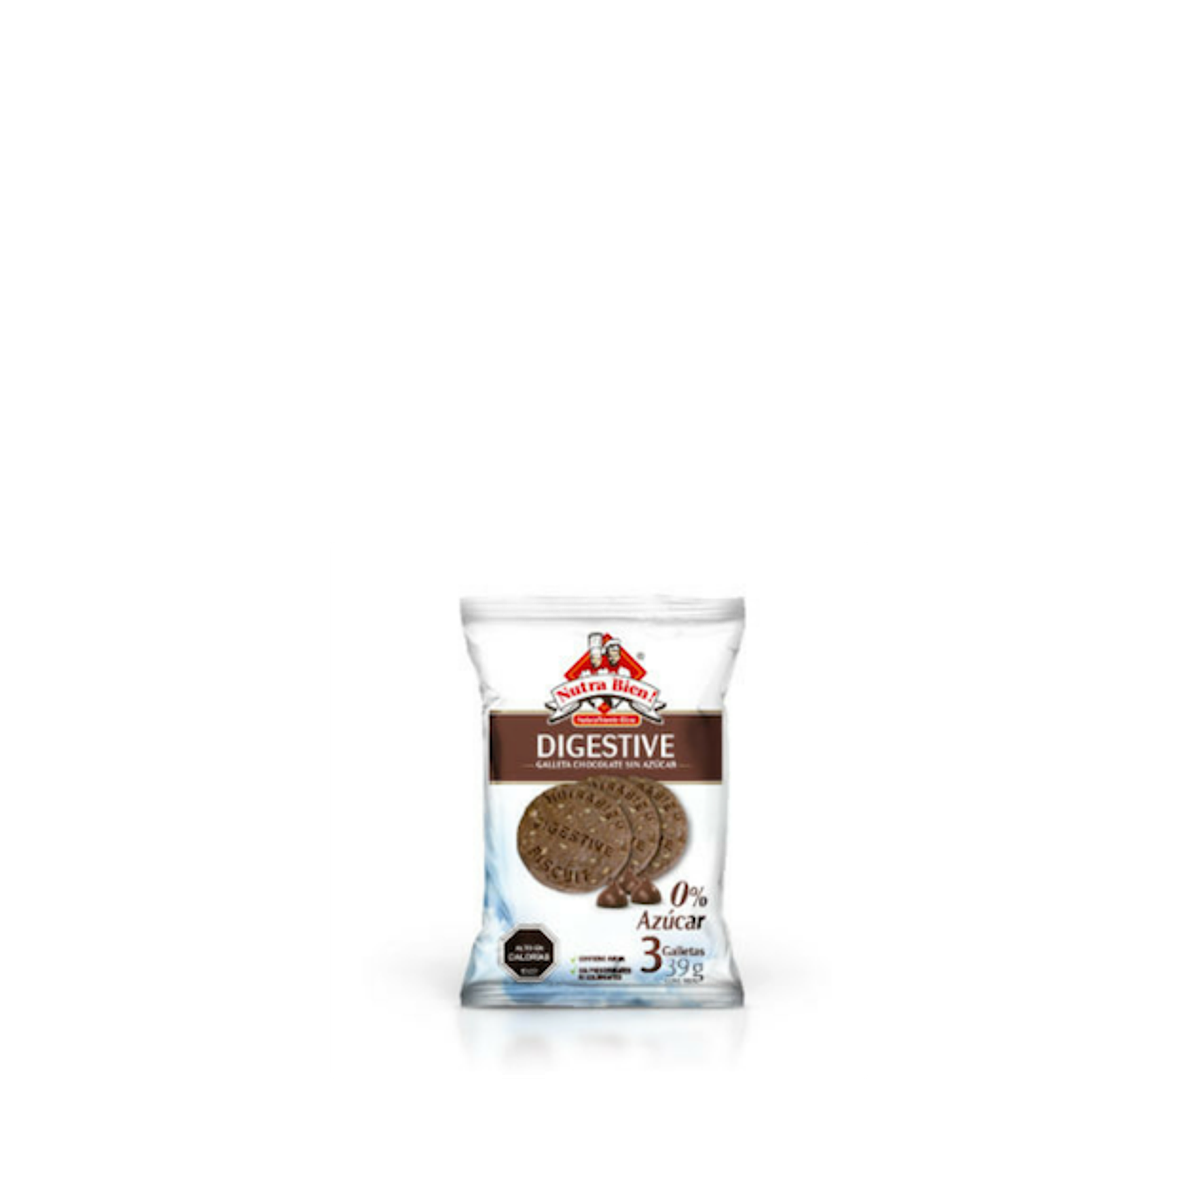 sinAzucar.org on X: 5 galletas Fontaneda Digestive Chocolate (86g) tienen  25,37g de azúcar, equivalente a 6,34 terrones.  / X